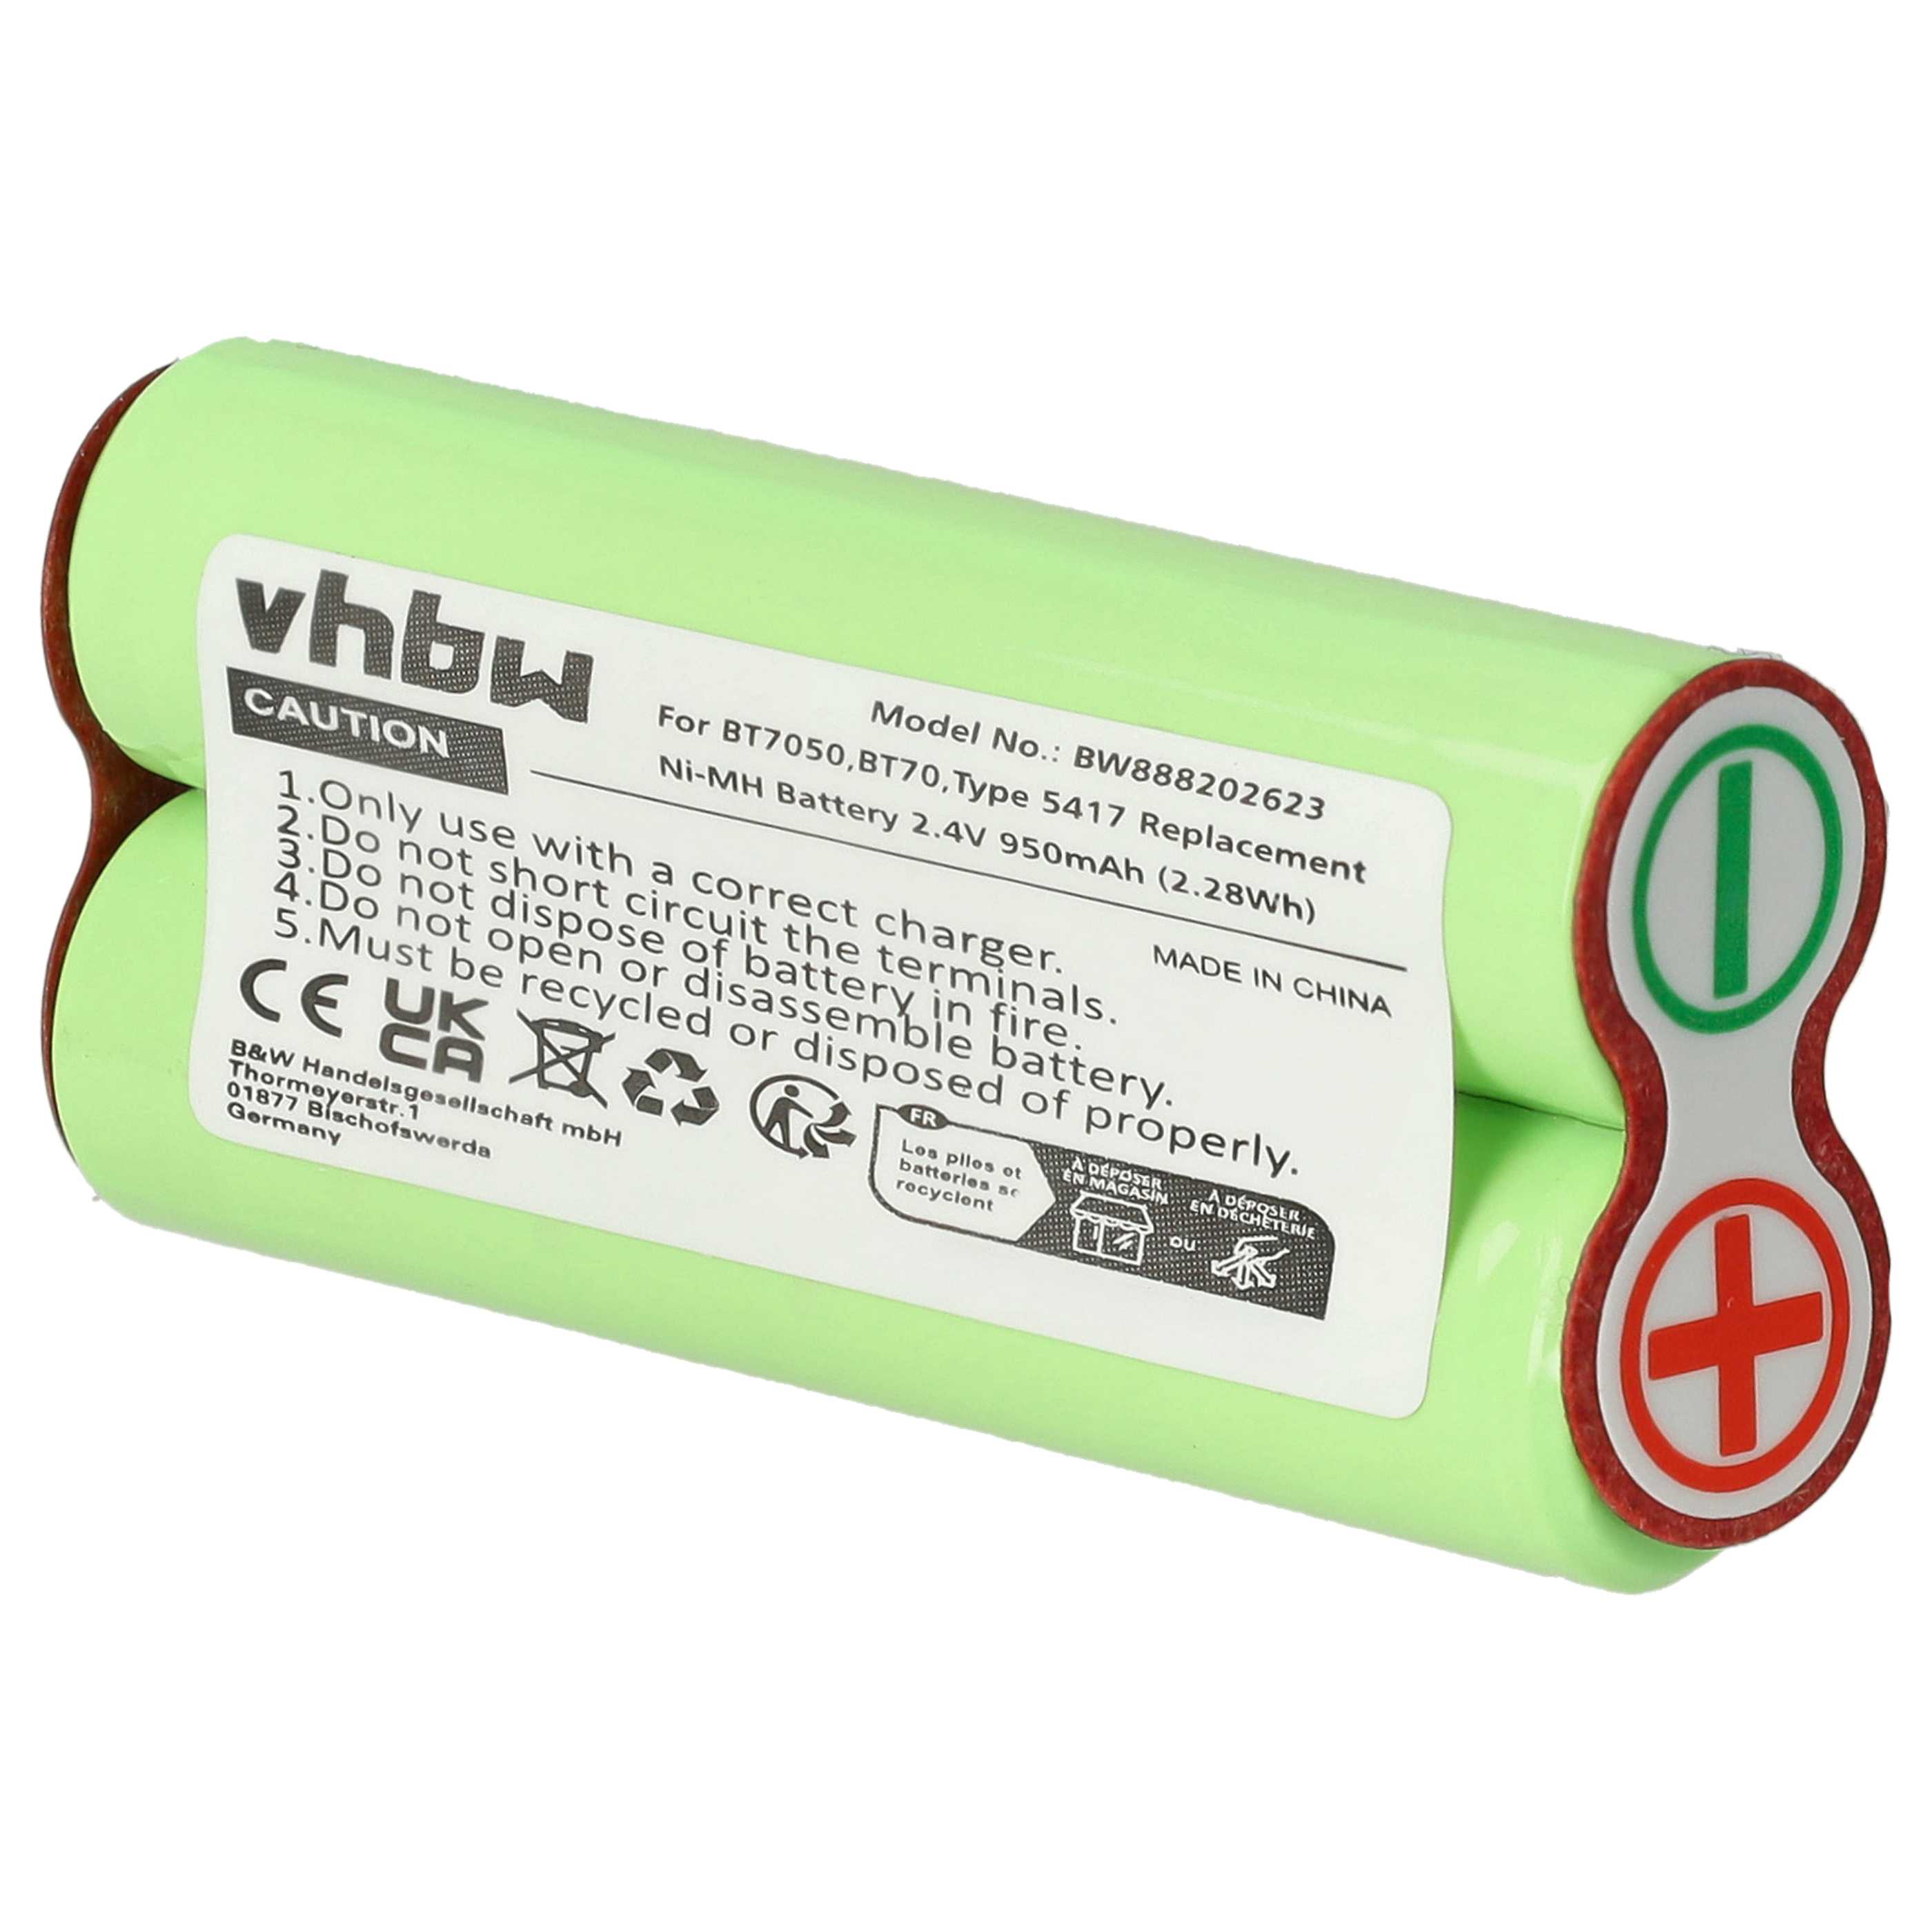 Batterie remplace Braun Type 5417 pour rasoir électrique - 950mAh 2,4V NiMH